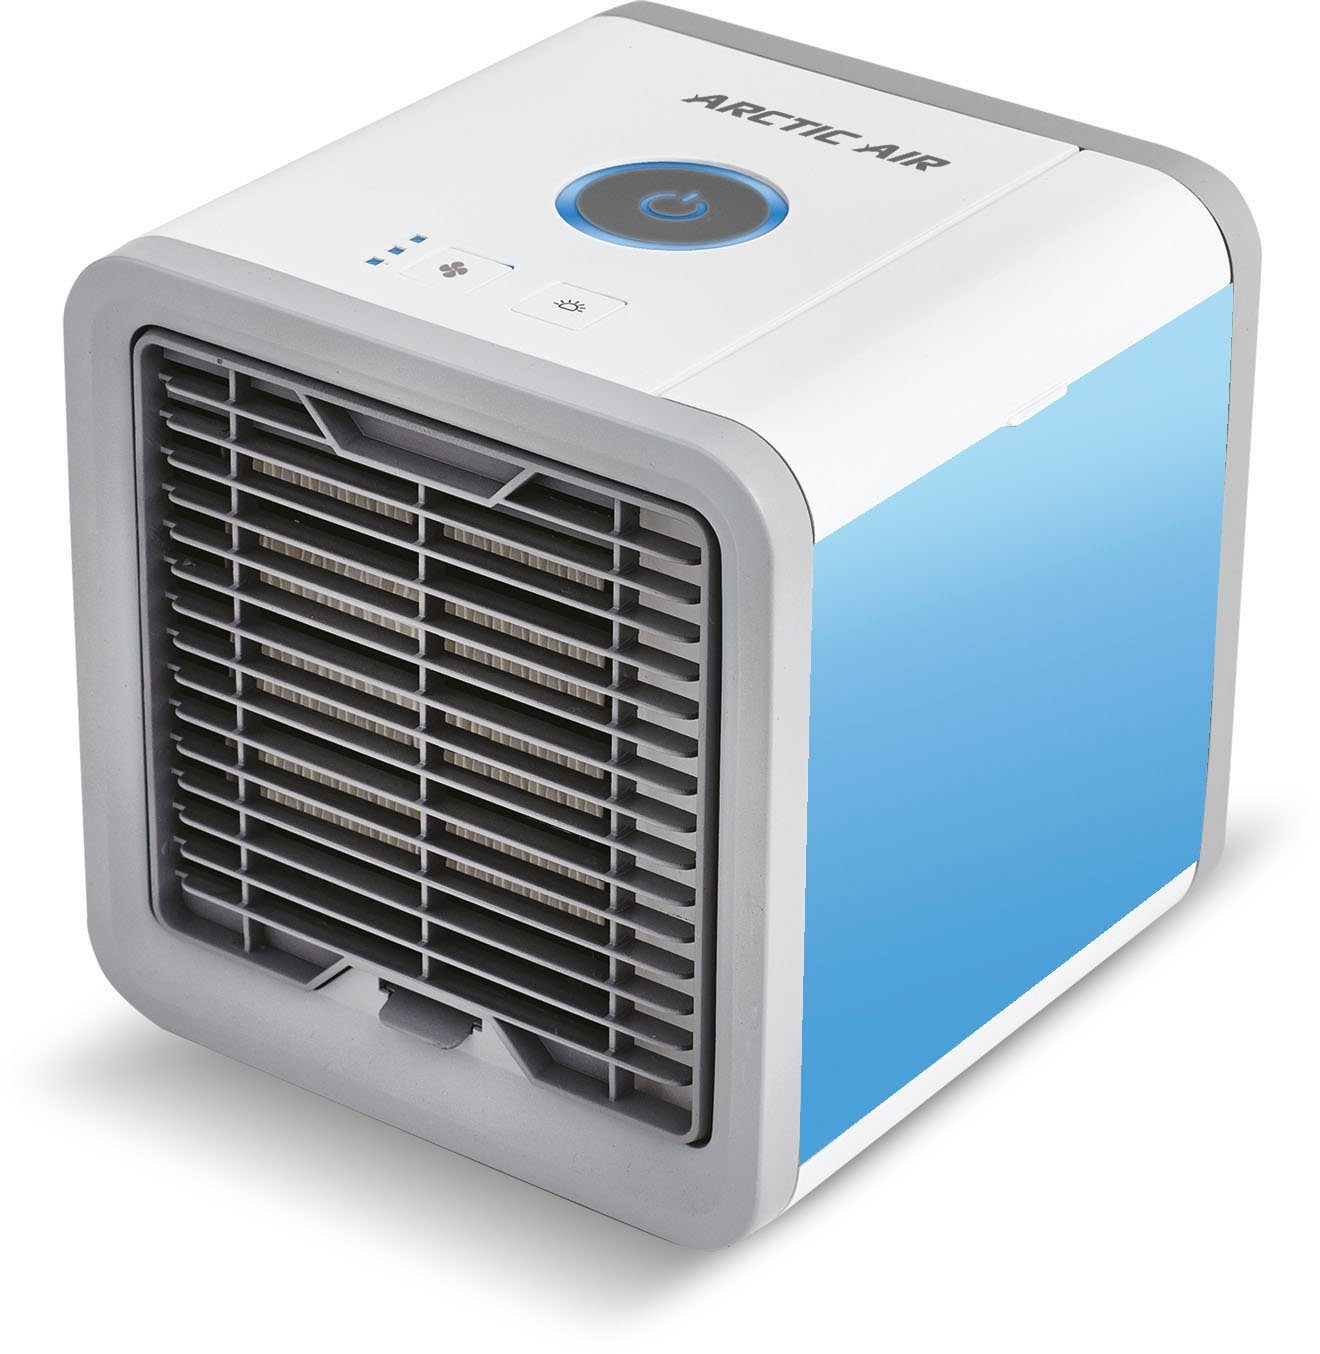 MediaShop Ventilatorkombigerät Arctic Luft in Air, und Ihrer erfrischt Luftkühler, kühlt, die Umgebung befeuchtet